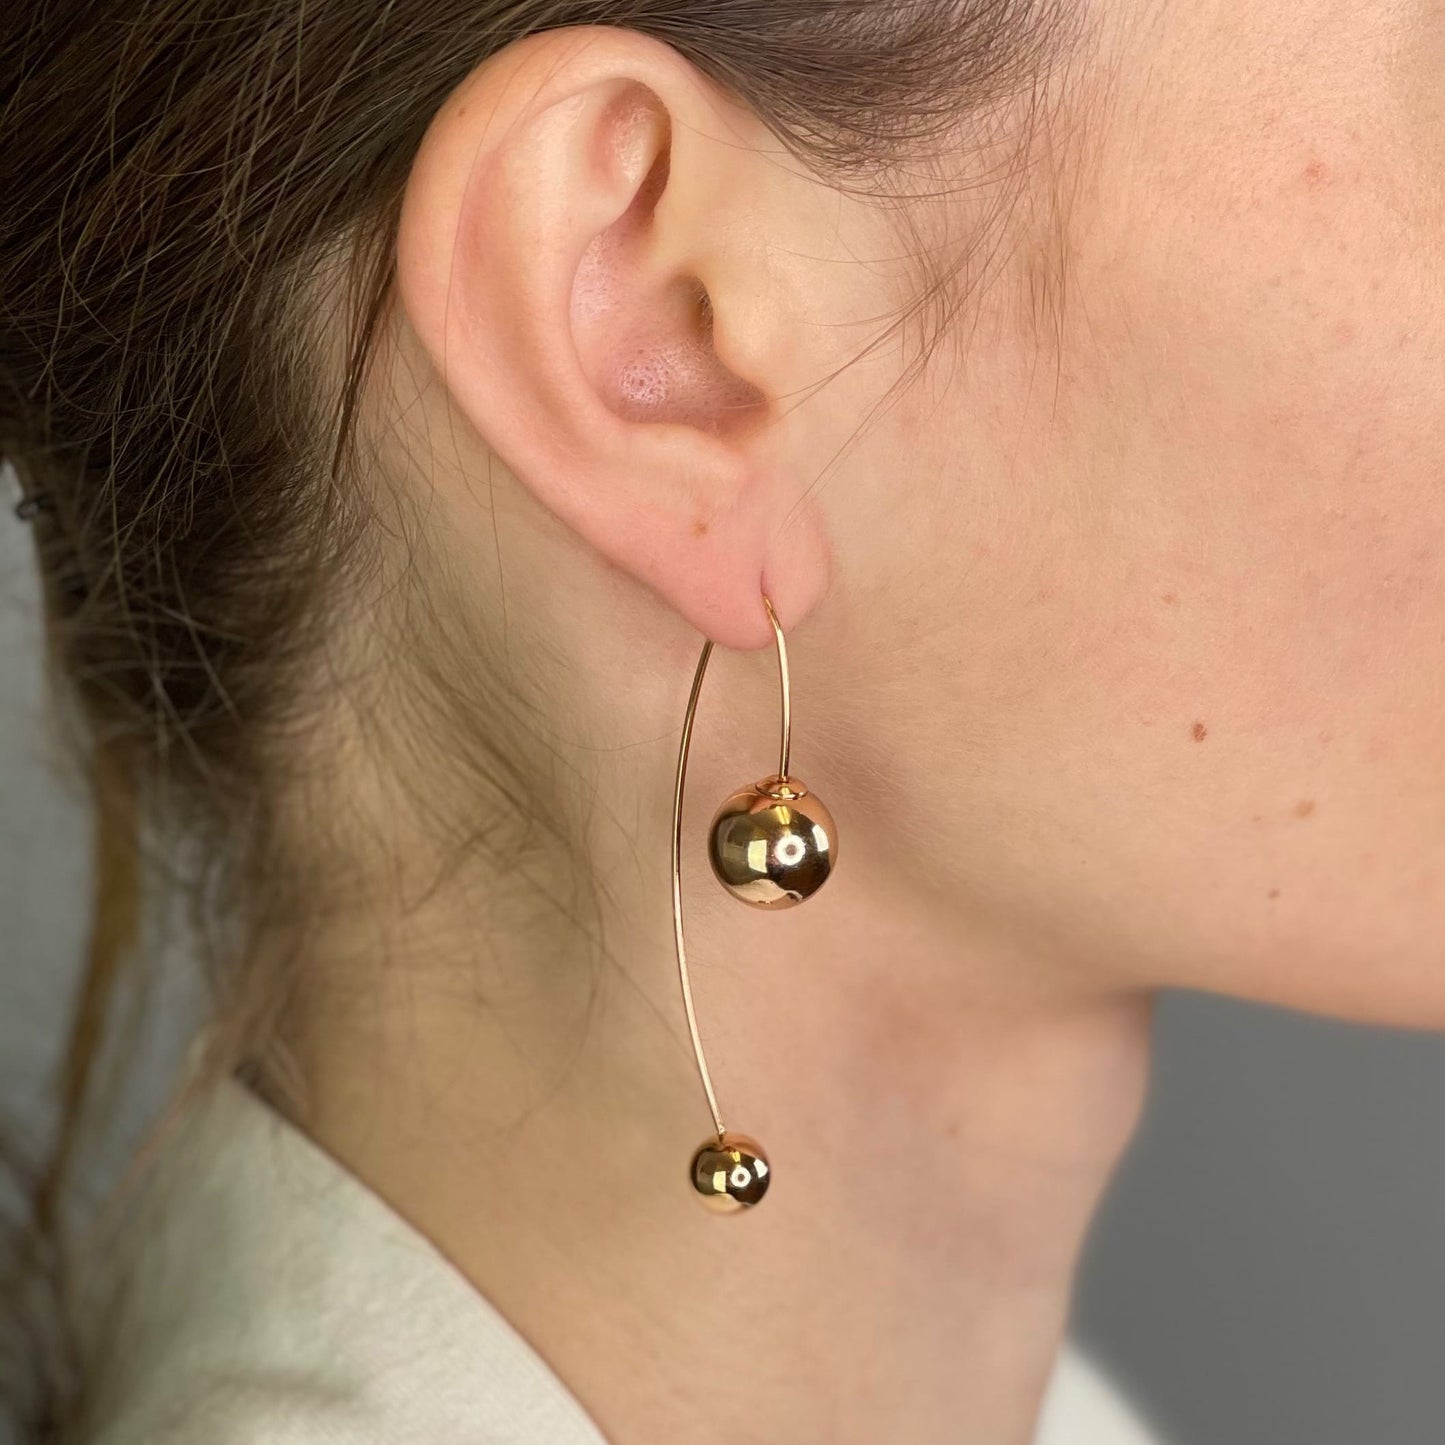 Gold threader earrings